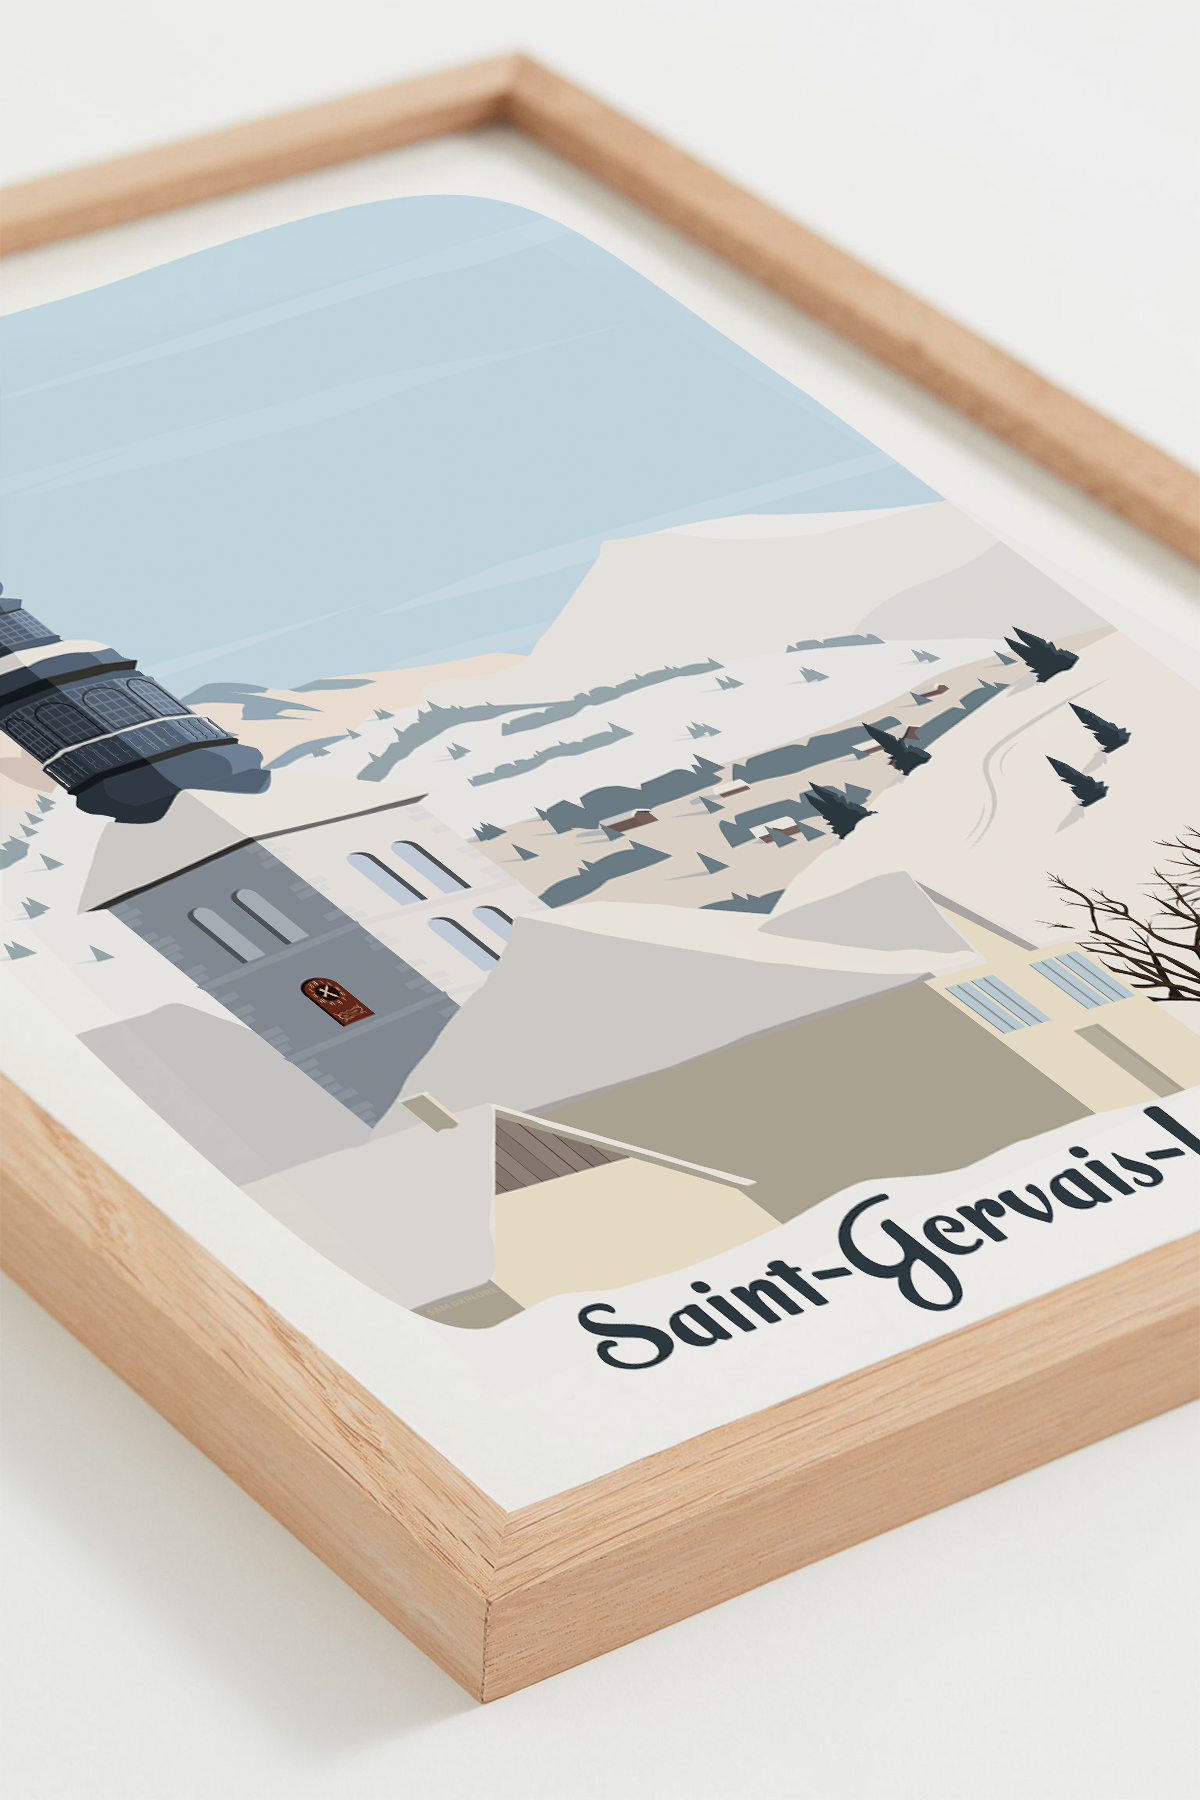 Affiche Saint-Gervais-les-Bains